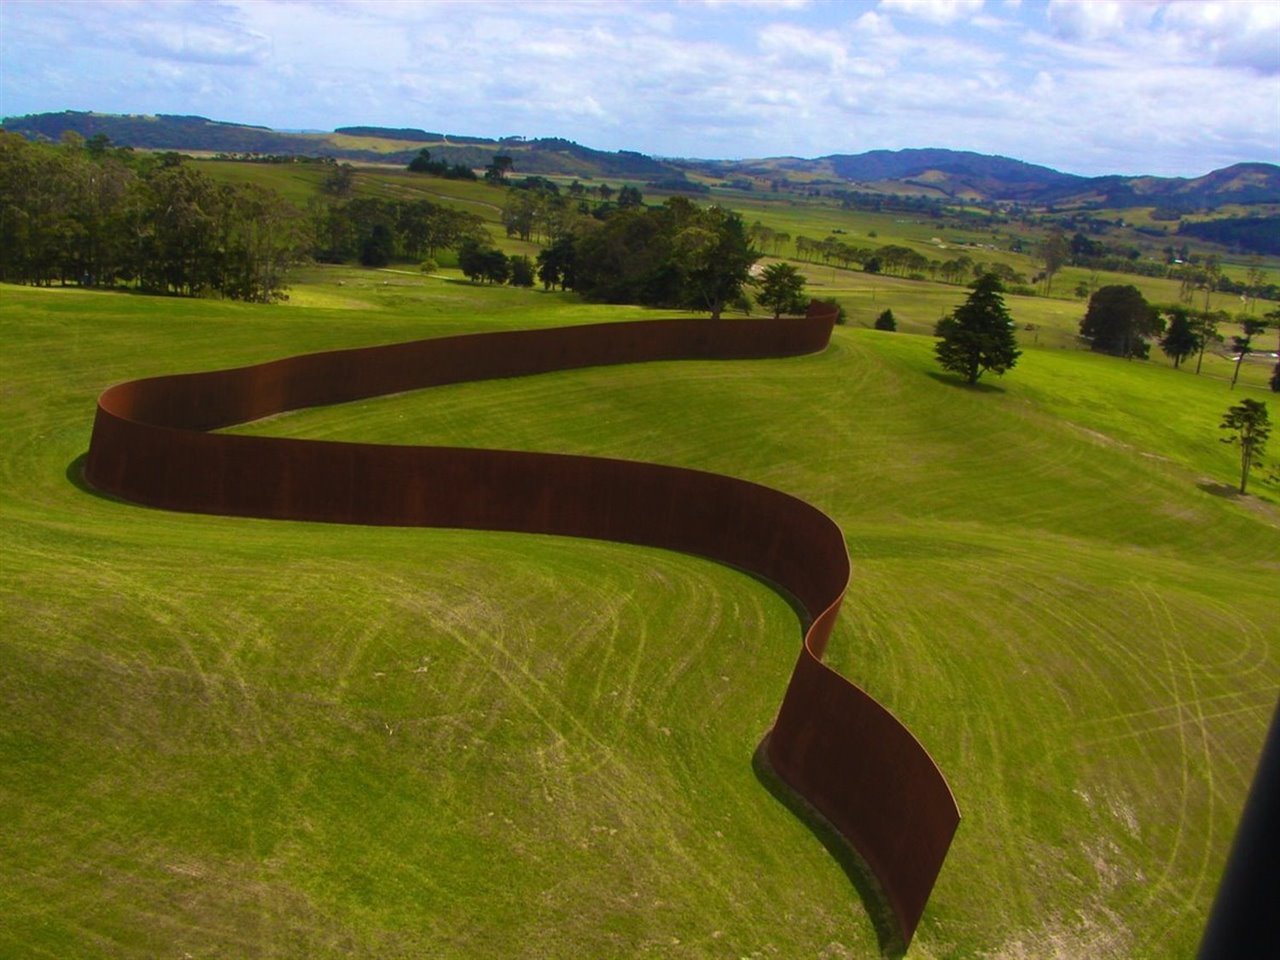 Amante de la escultura minimalista, al cantante le entaría tener una pieza de Richard Serra en su jardín. En la imagen, «Te Tuhirangi Contour» (1999/2001 - 56 planchas de acero corten 252m x 6m x 50mm) situada en el parque de esculturas Gibbs Farm, en Nueva Zelanda. Esta, evidentemente, no cabría en su jardín….